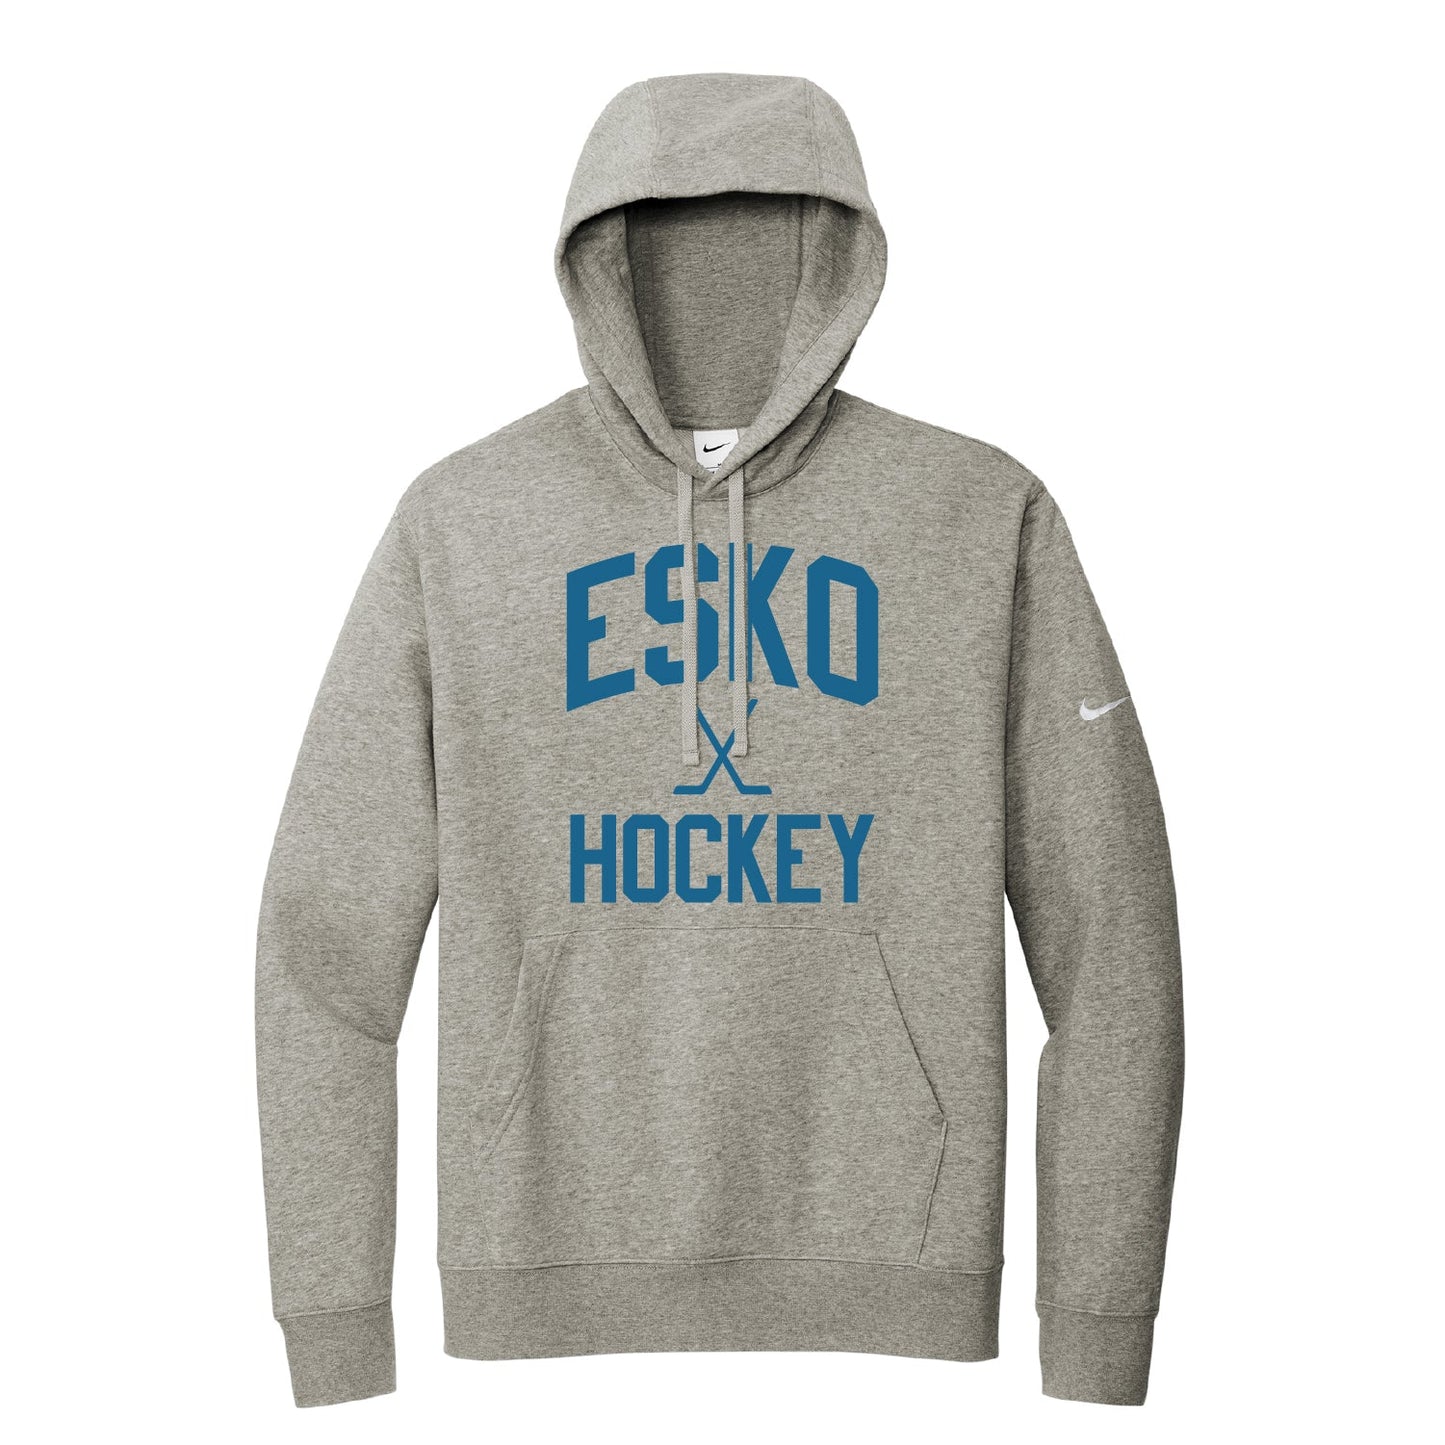 Esko Hockey Nike Club Fleece Sleeve Swoosh Pullover Hoodie